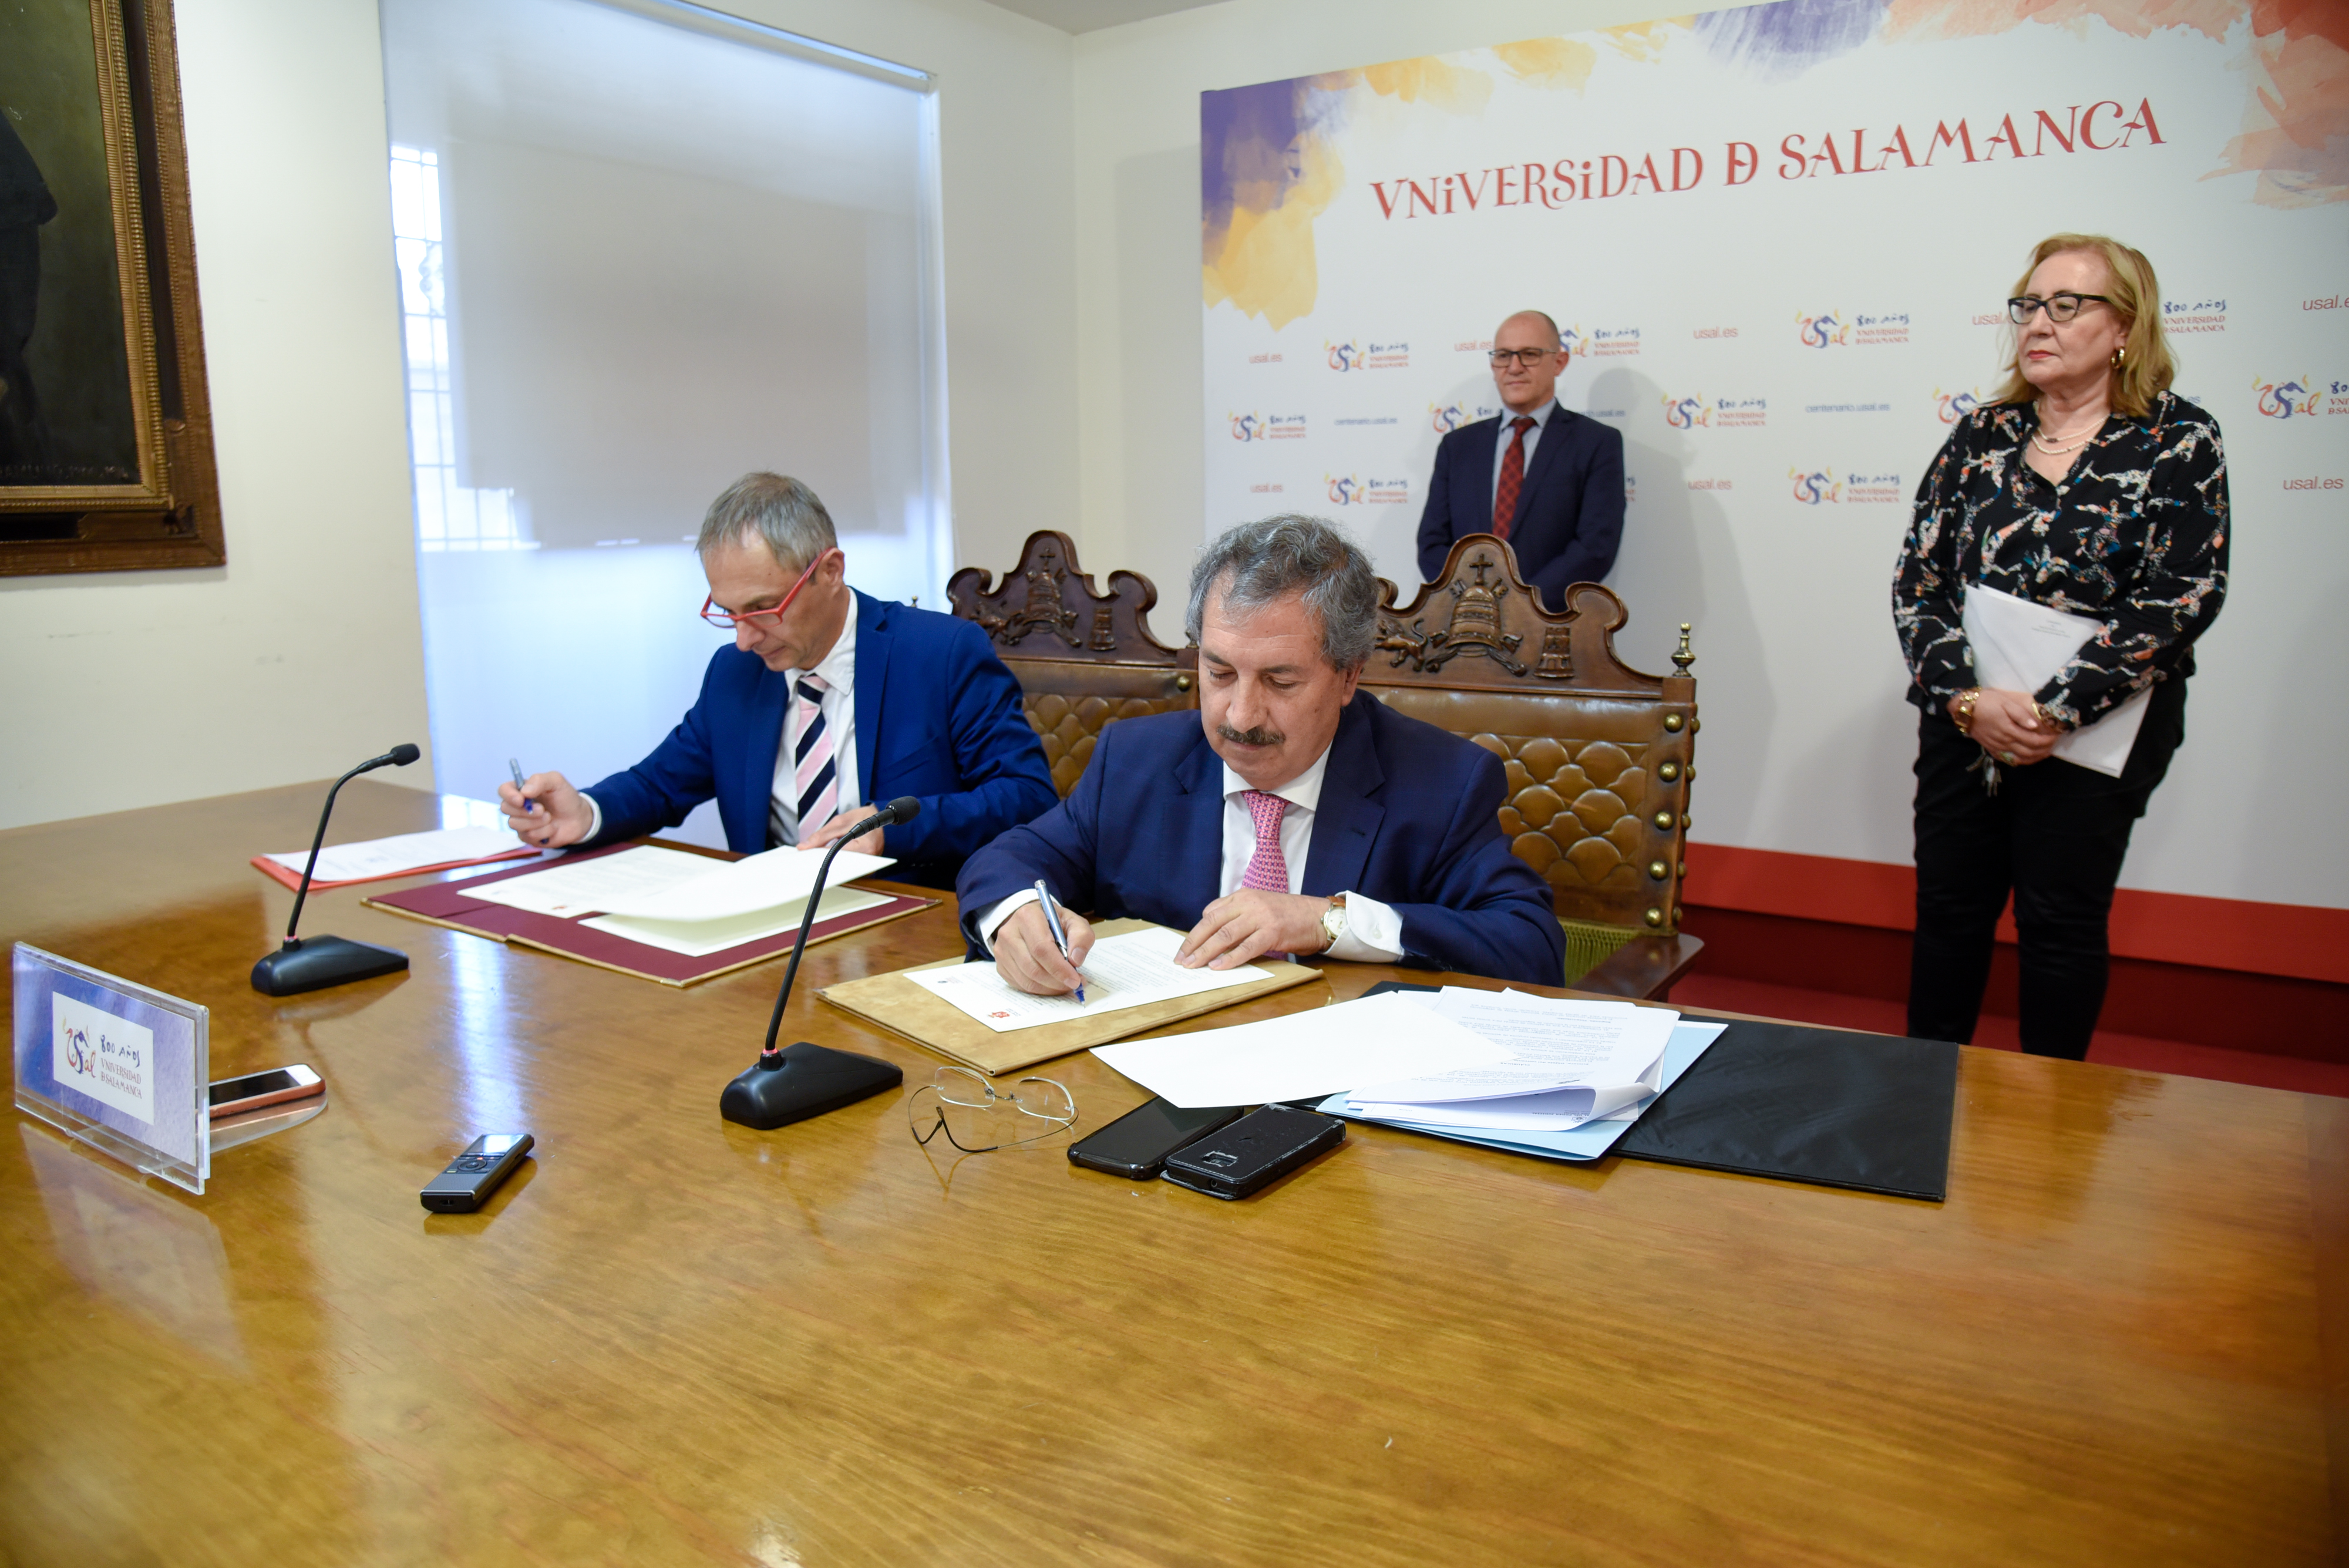 Universidad de Salamanca y el Consejo General del Poder Judicial firman un convenio para impulsar la investigación y la docencia  